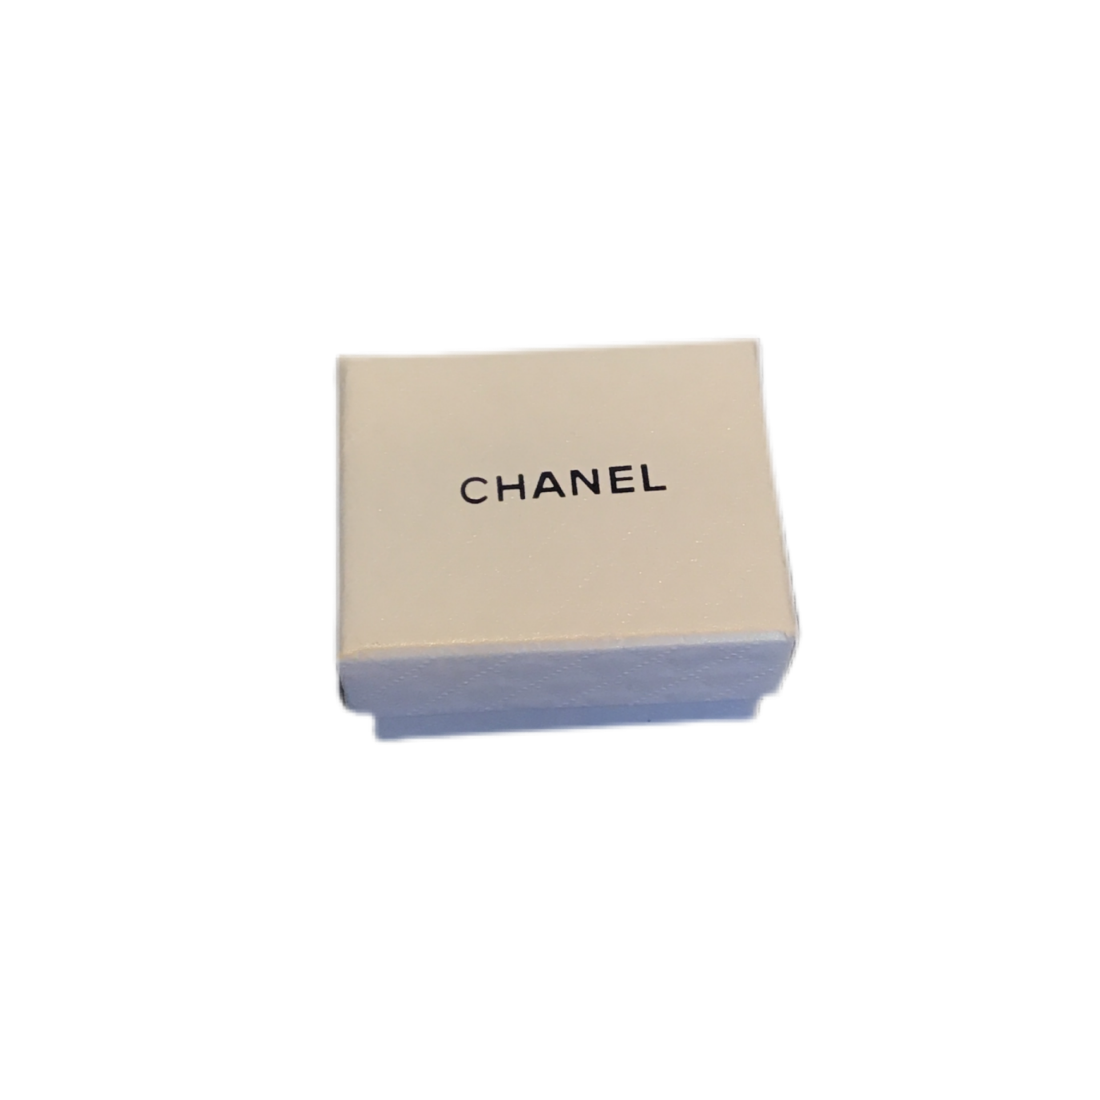 Dollhouse Accessories - Chanel Box - Wyld Blue